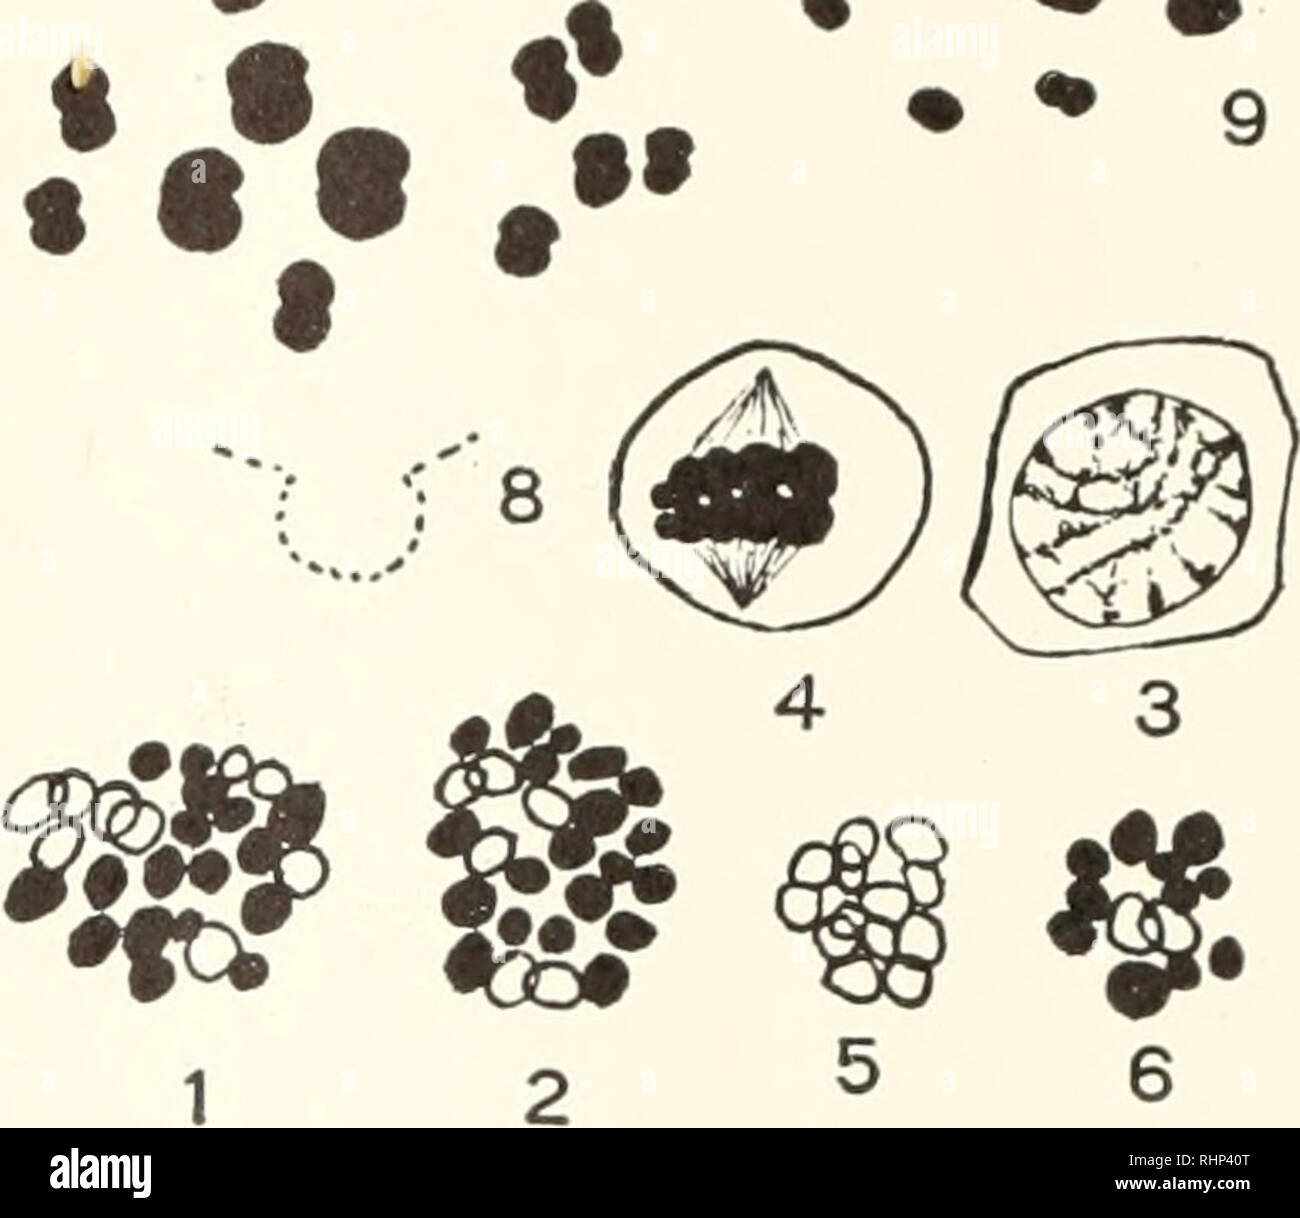 . Il bollettino biologico. Biologia; Zoologia; biologia; biologia marina. * T . .'W?^-. V/lvV?^ fi i,k N-. Figg. 1-9. I cromosomi di Lcpas anatifera L. 1, 2, dividendo le cellule intestinali. 3, spermatocyte in coniugazione di fase. 4-6, spermatocytes in prima divisione di maturazione. 7, vista di profilo del primo mandrino meiotica nell'uovo. 8, cromosomi in un primo mandrino meiotica che sorge obliquamente nella sezione . 9, vista polare del cromosoma piastra del primo meiotica mandrino nell'uovo. Tutte le figure X 2000. anticipo di indisturbati le piastre cromosomico durante anaphase. N. ONU- anche la distribuzione dell'chrom Foto Stock